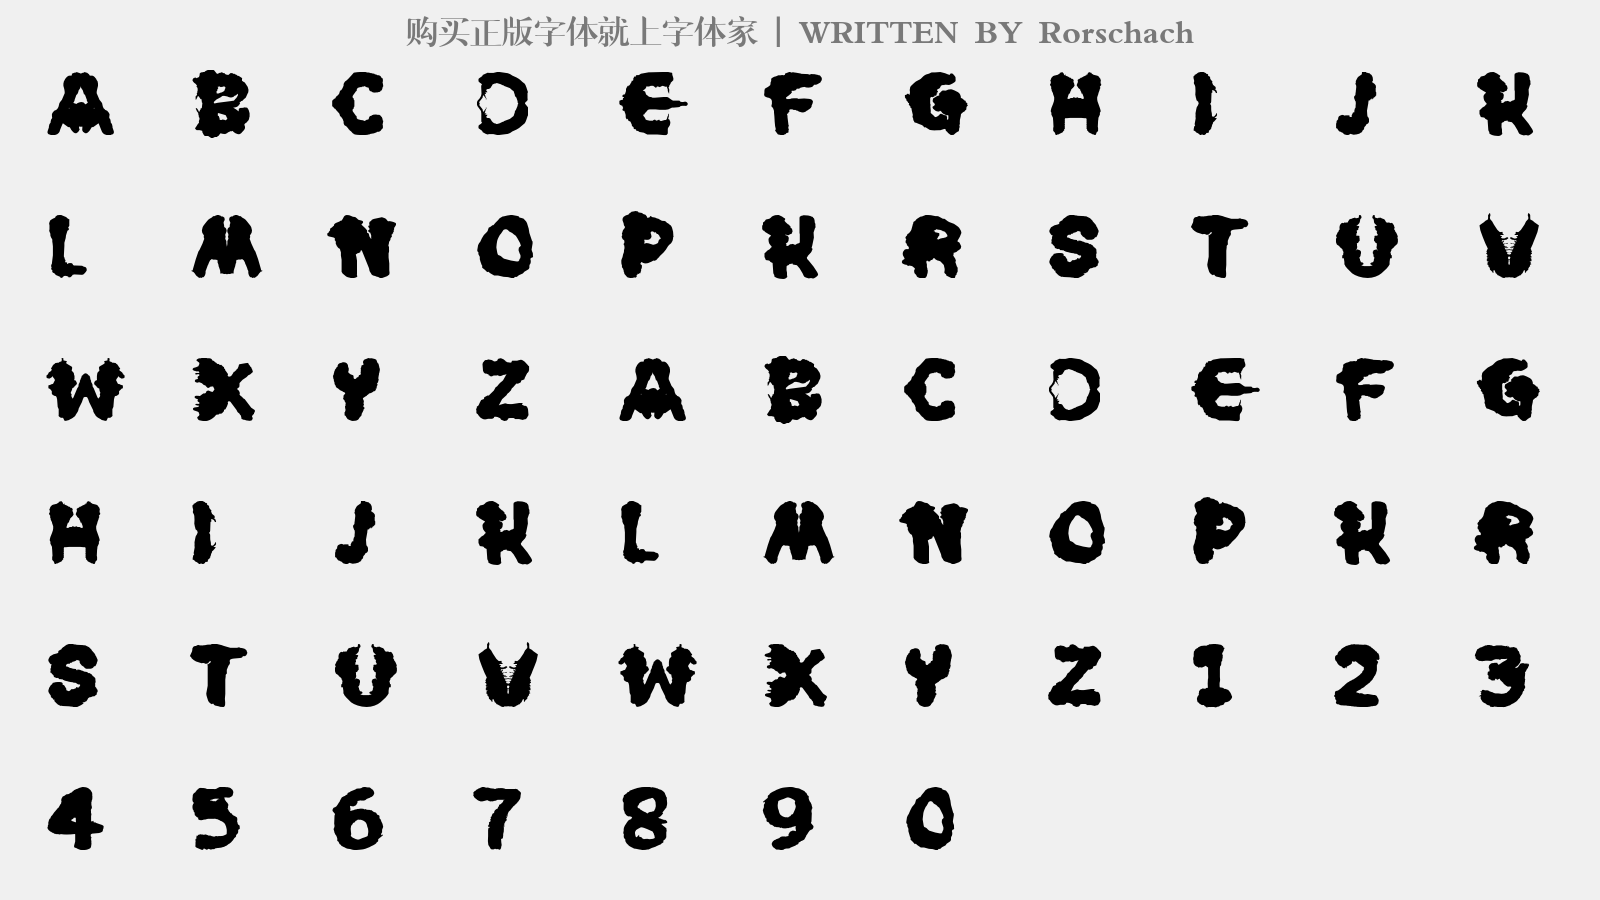 Rorschach - 大写字母/小写字母/数字